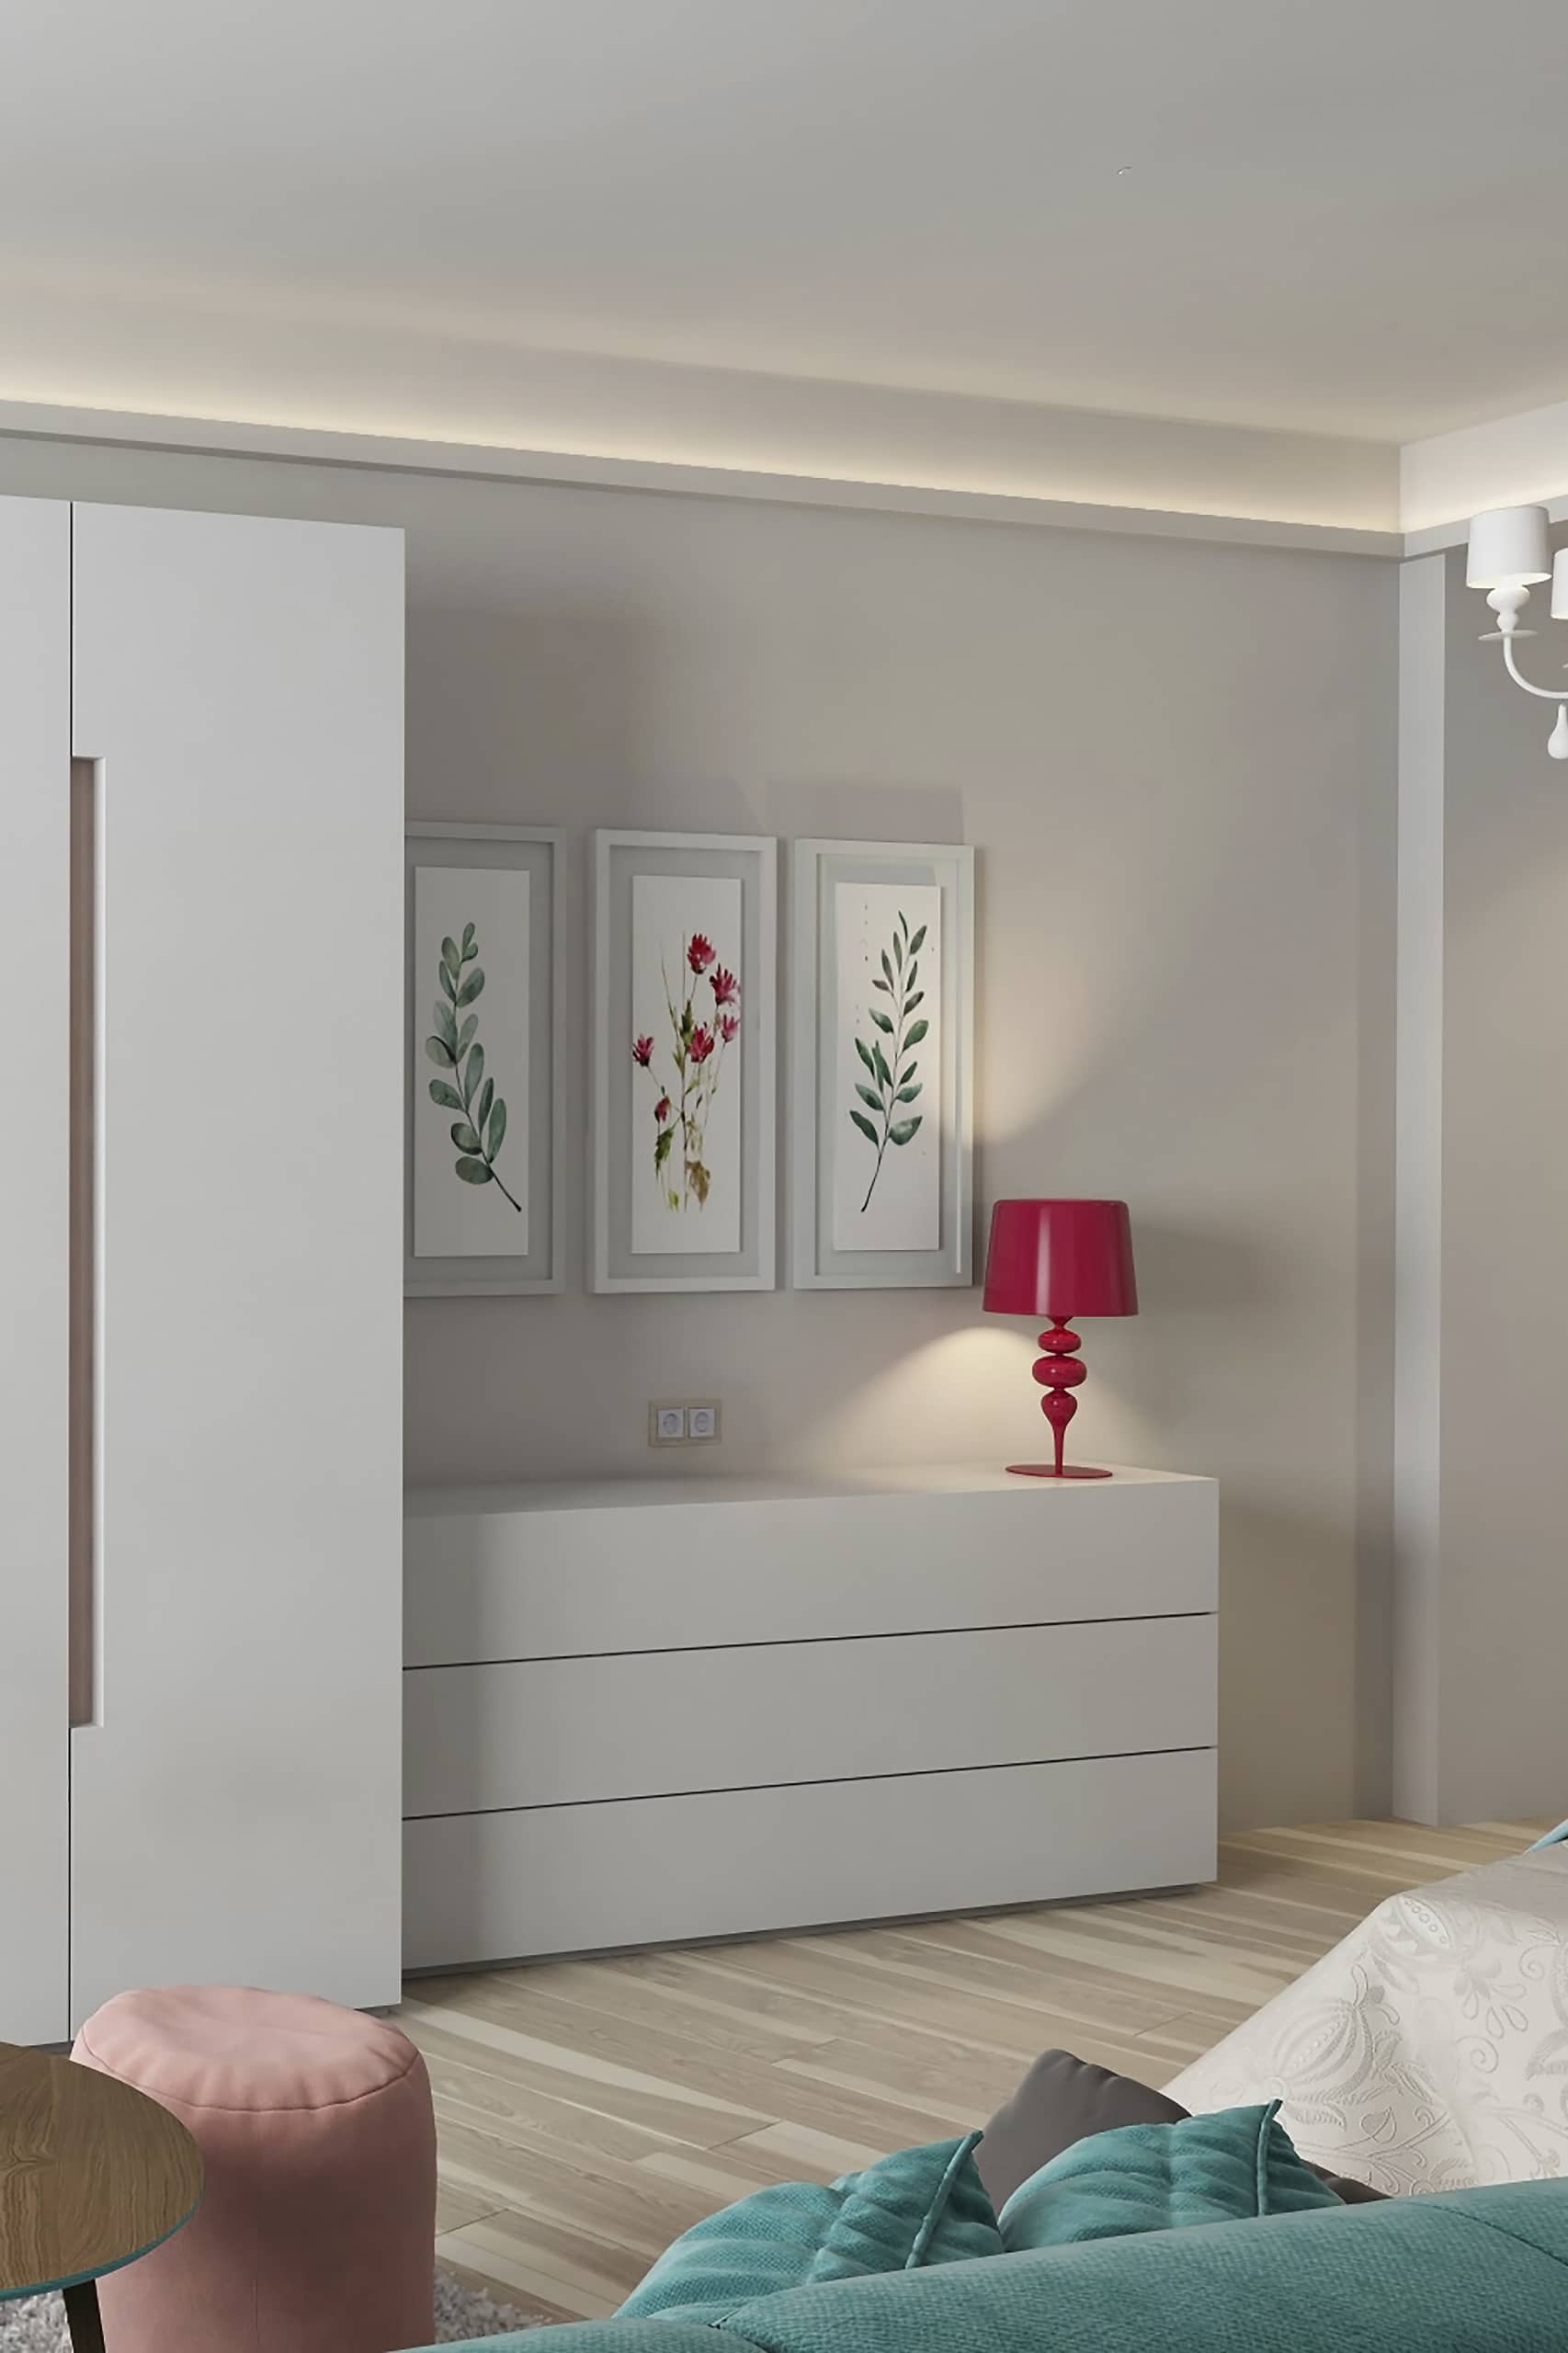 Лампа красивого бардового оттенка - выделяется на белом фоне спальни